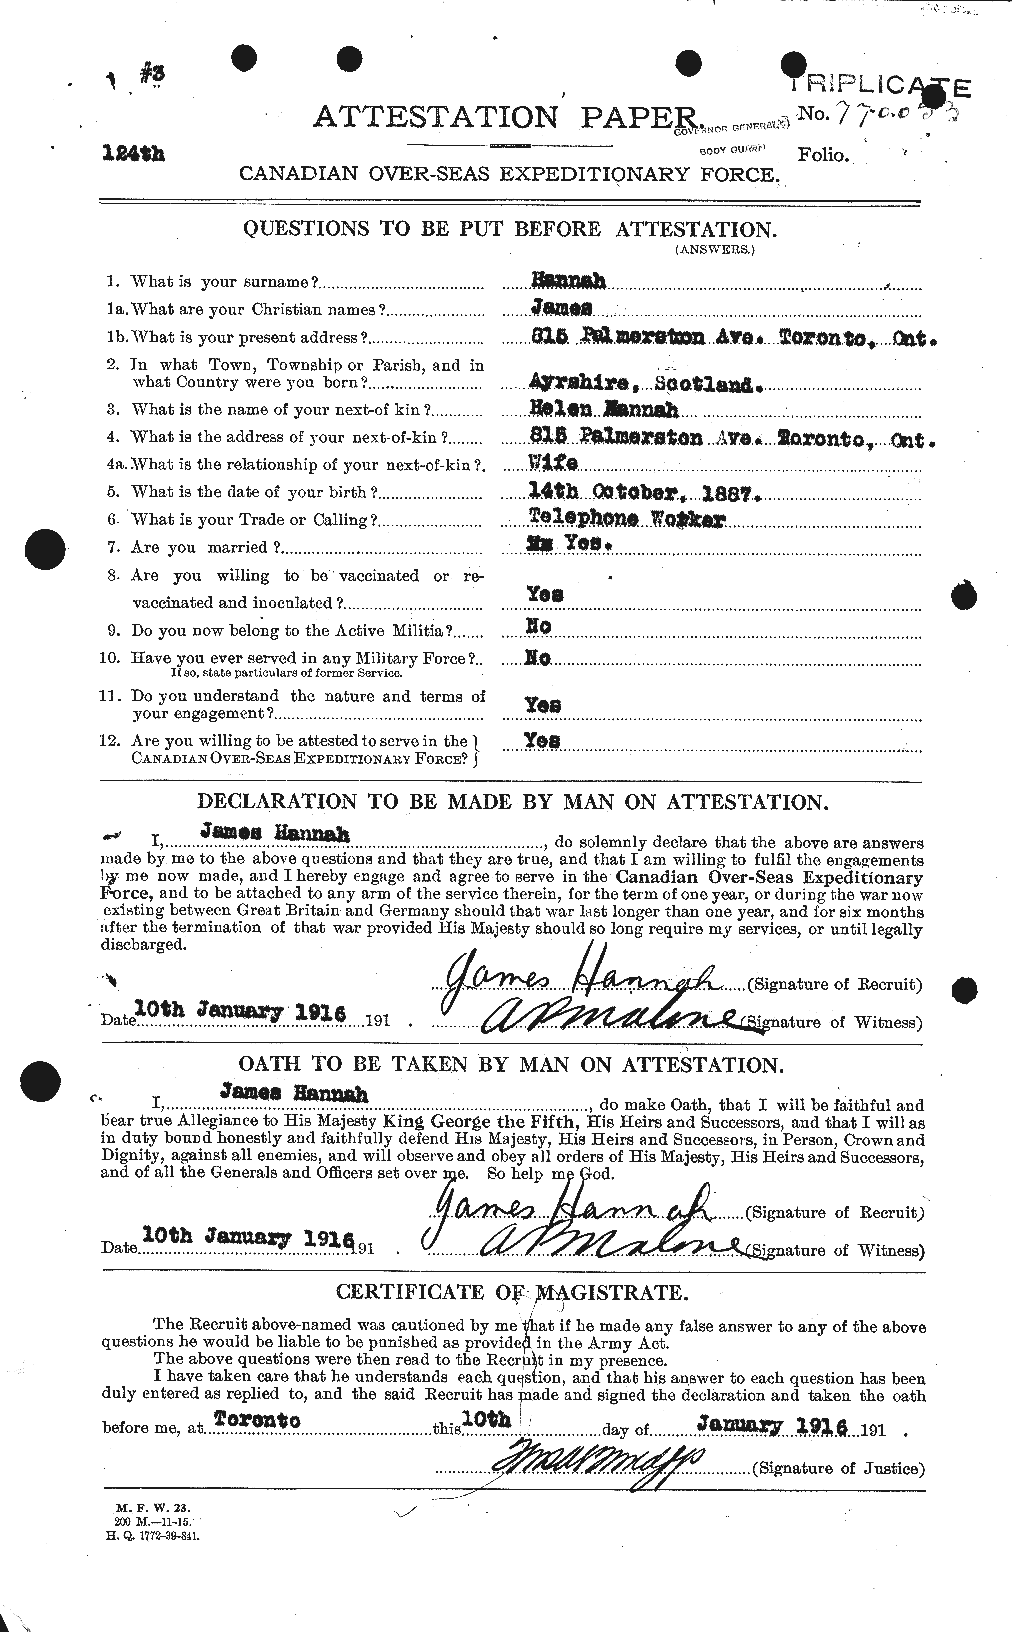 Dossiers du Personnel de la Première Guerre mondiale - CEC 374730a